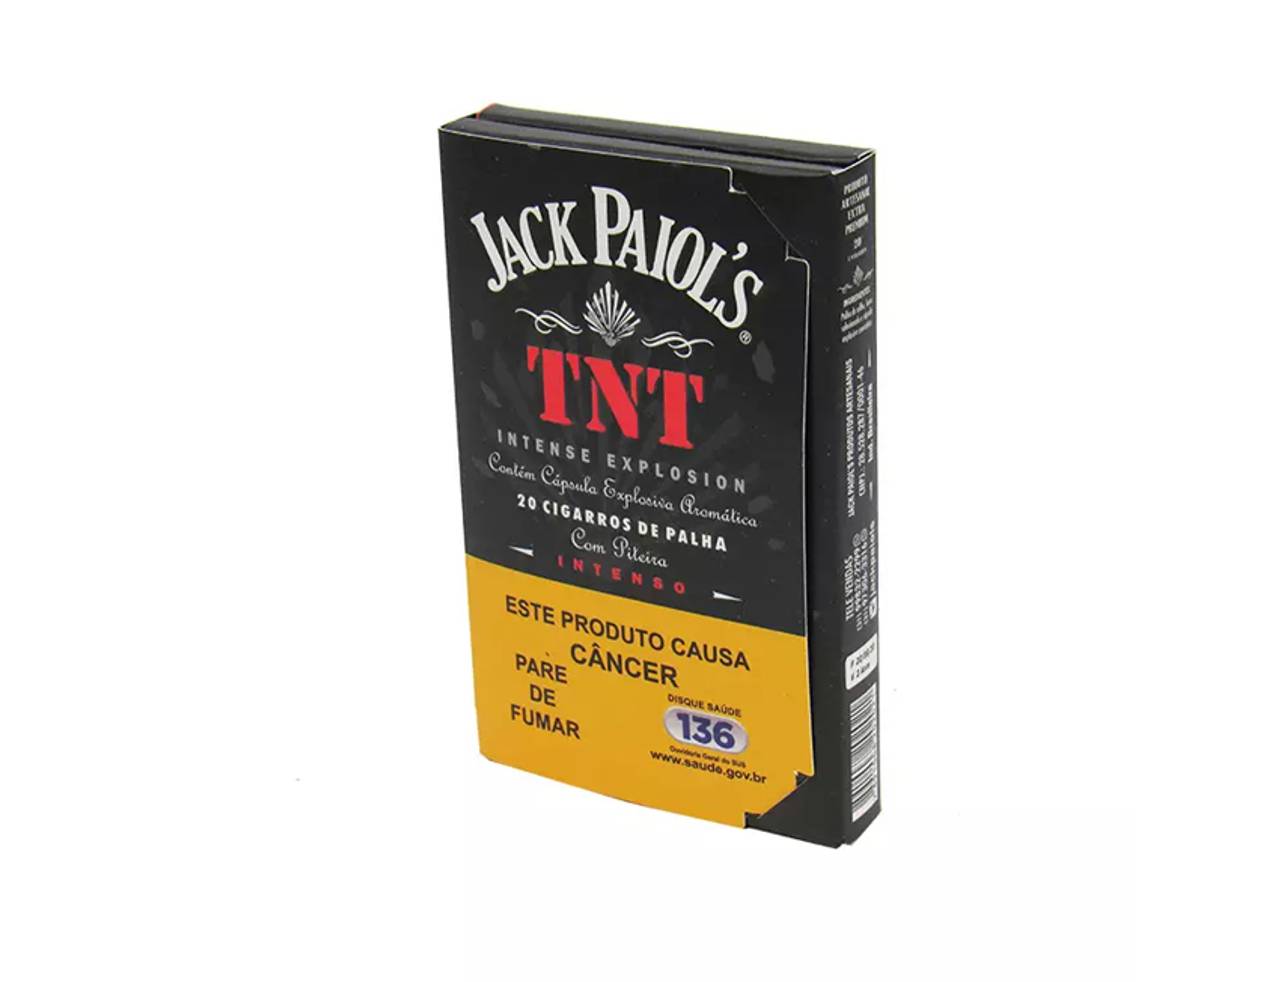 Palheiro Jack Paiol's TNT c/ piteira caixinha preta